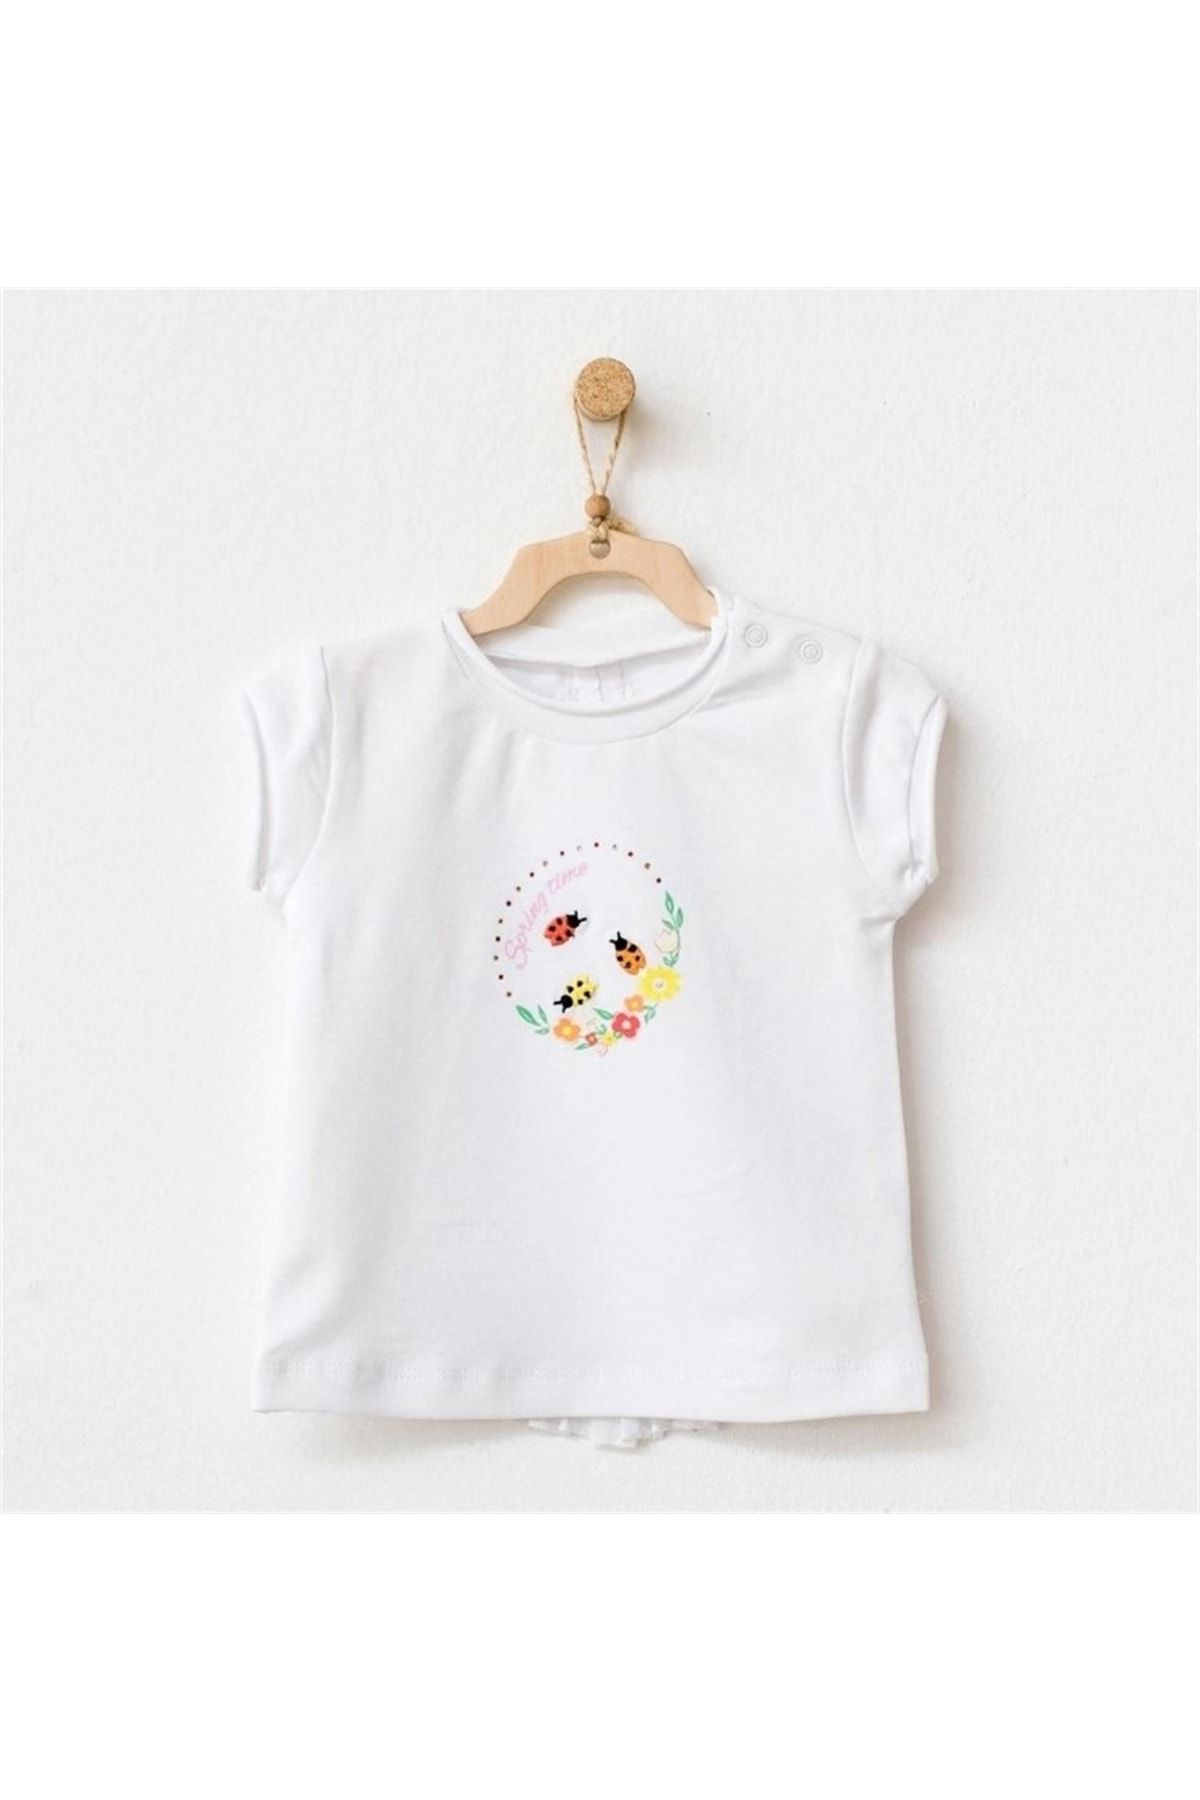 Andy Wawa Kız Bebek T-shirt Beyaz Ac21847r